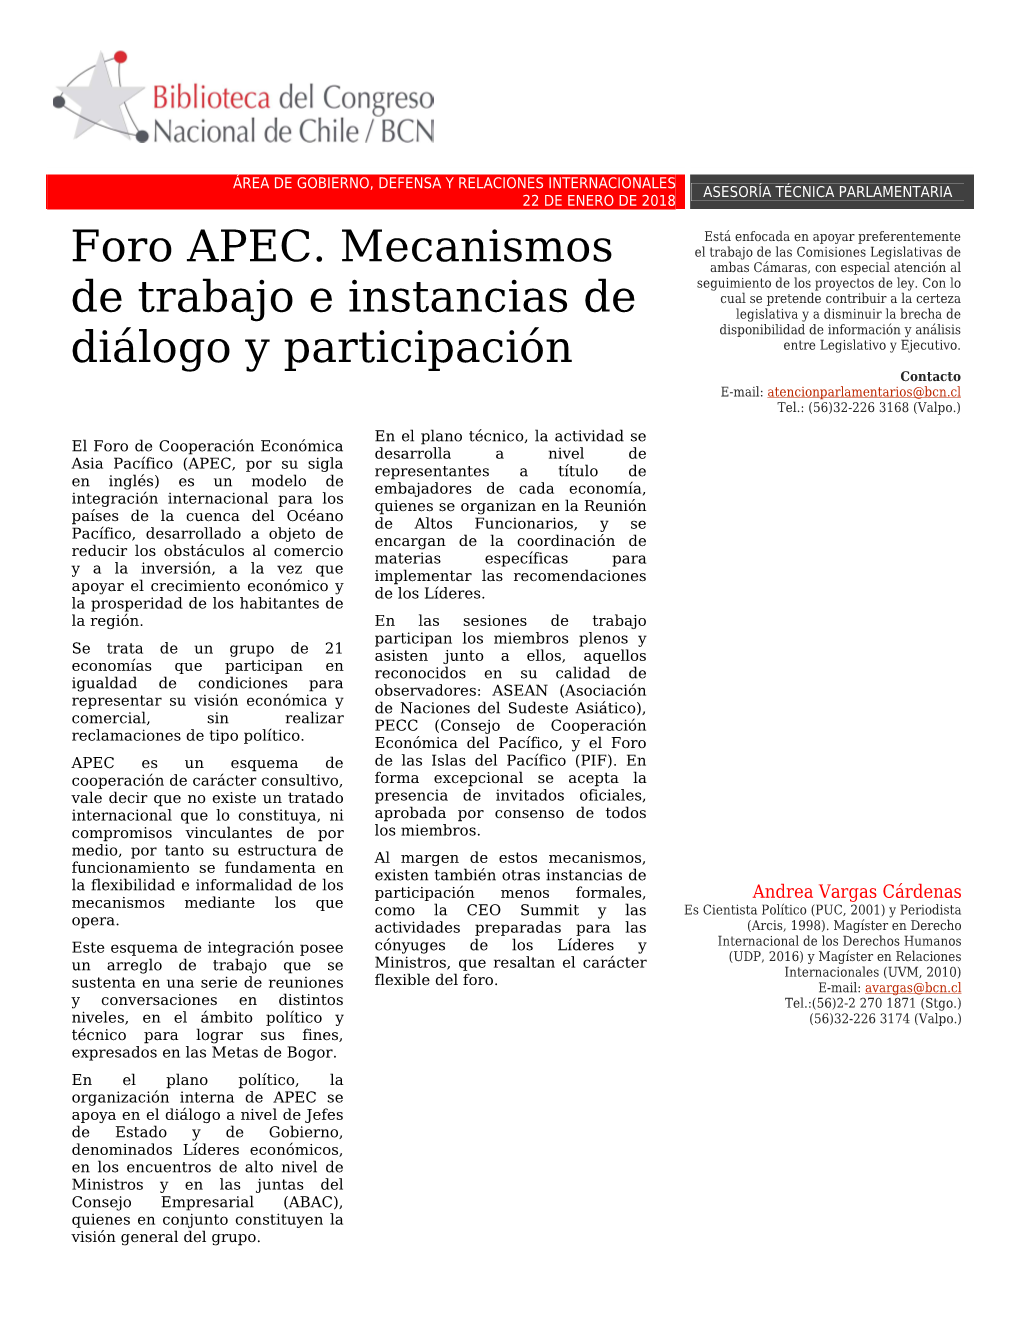 Foro APEC. Mecanismos De Trabajo E Instancias De Diálogo Y Participación